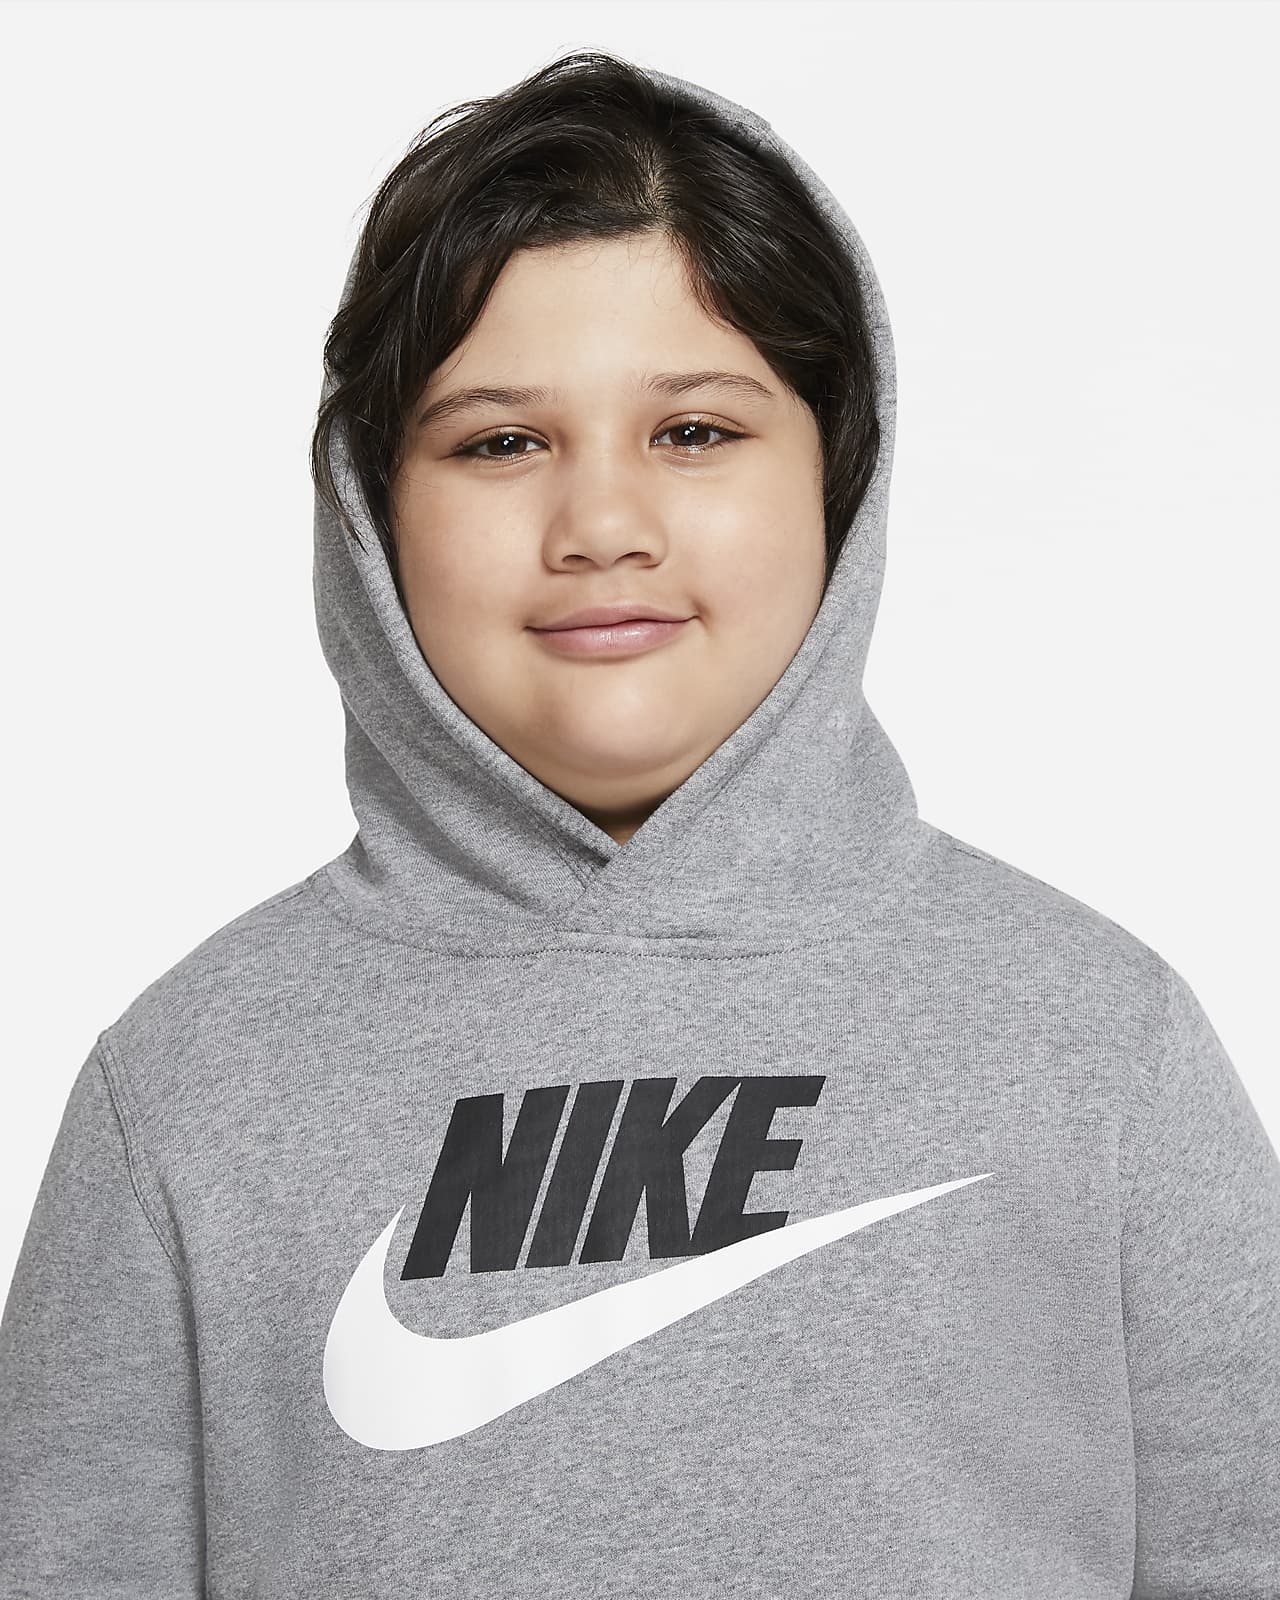 Nike Sportswear Club Fleece Little Kids' Pullover Hoodie